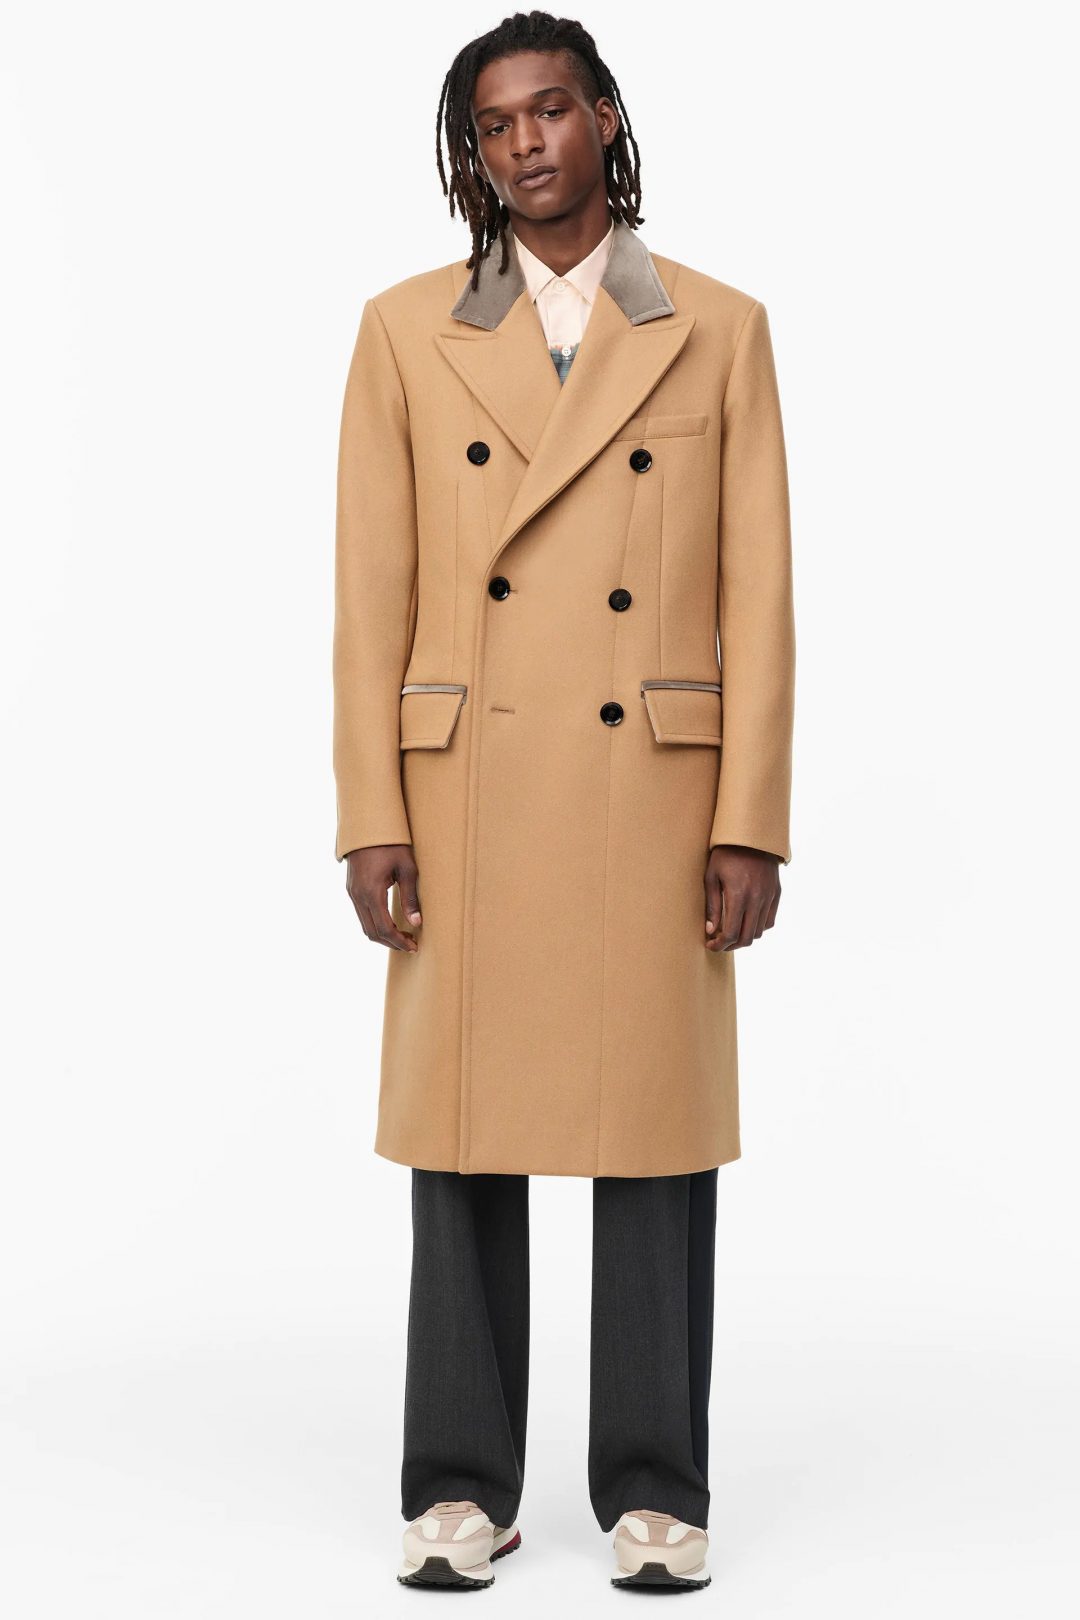 Zara muški kaput jesen zima 2020